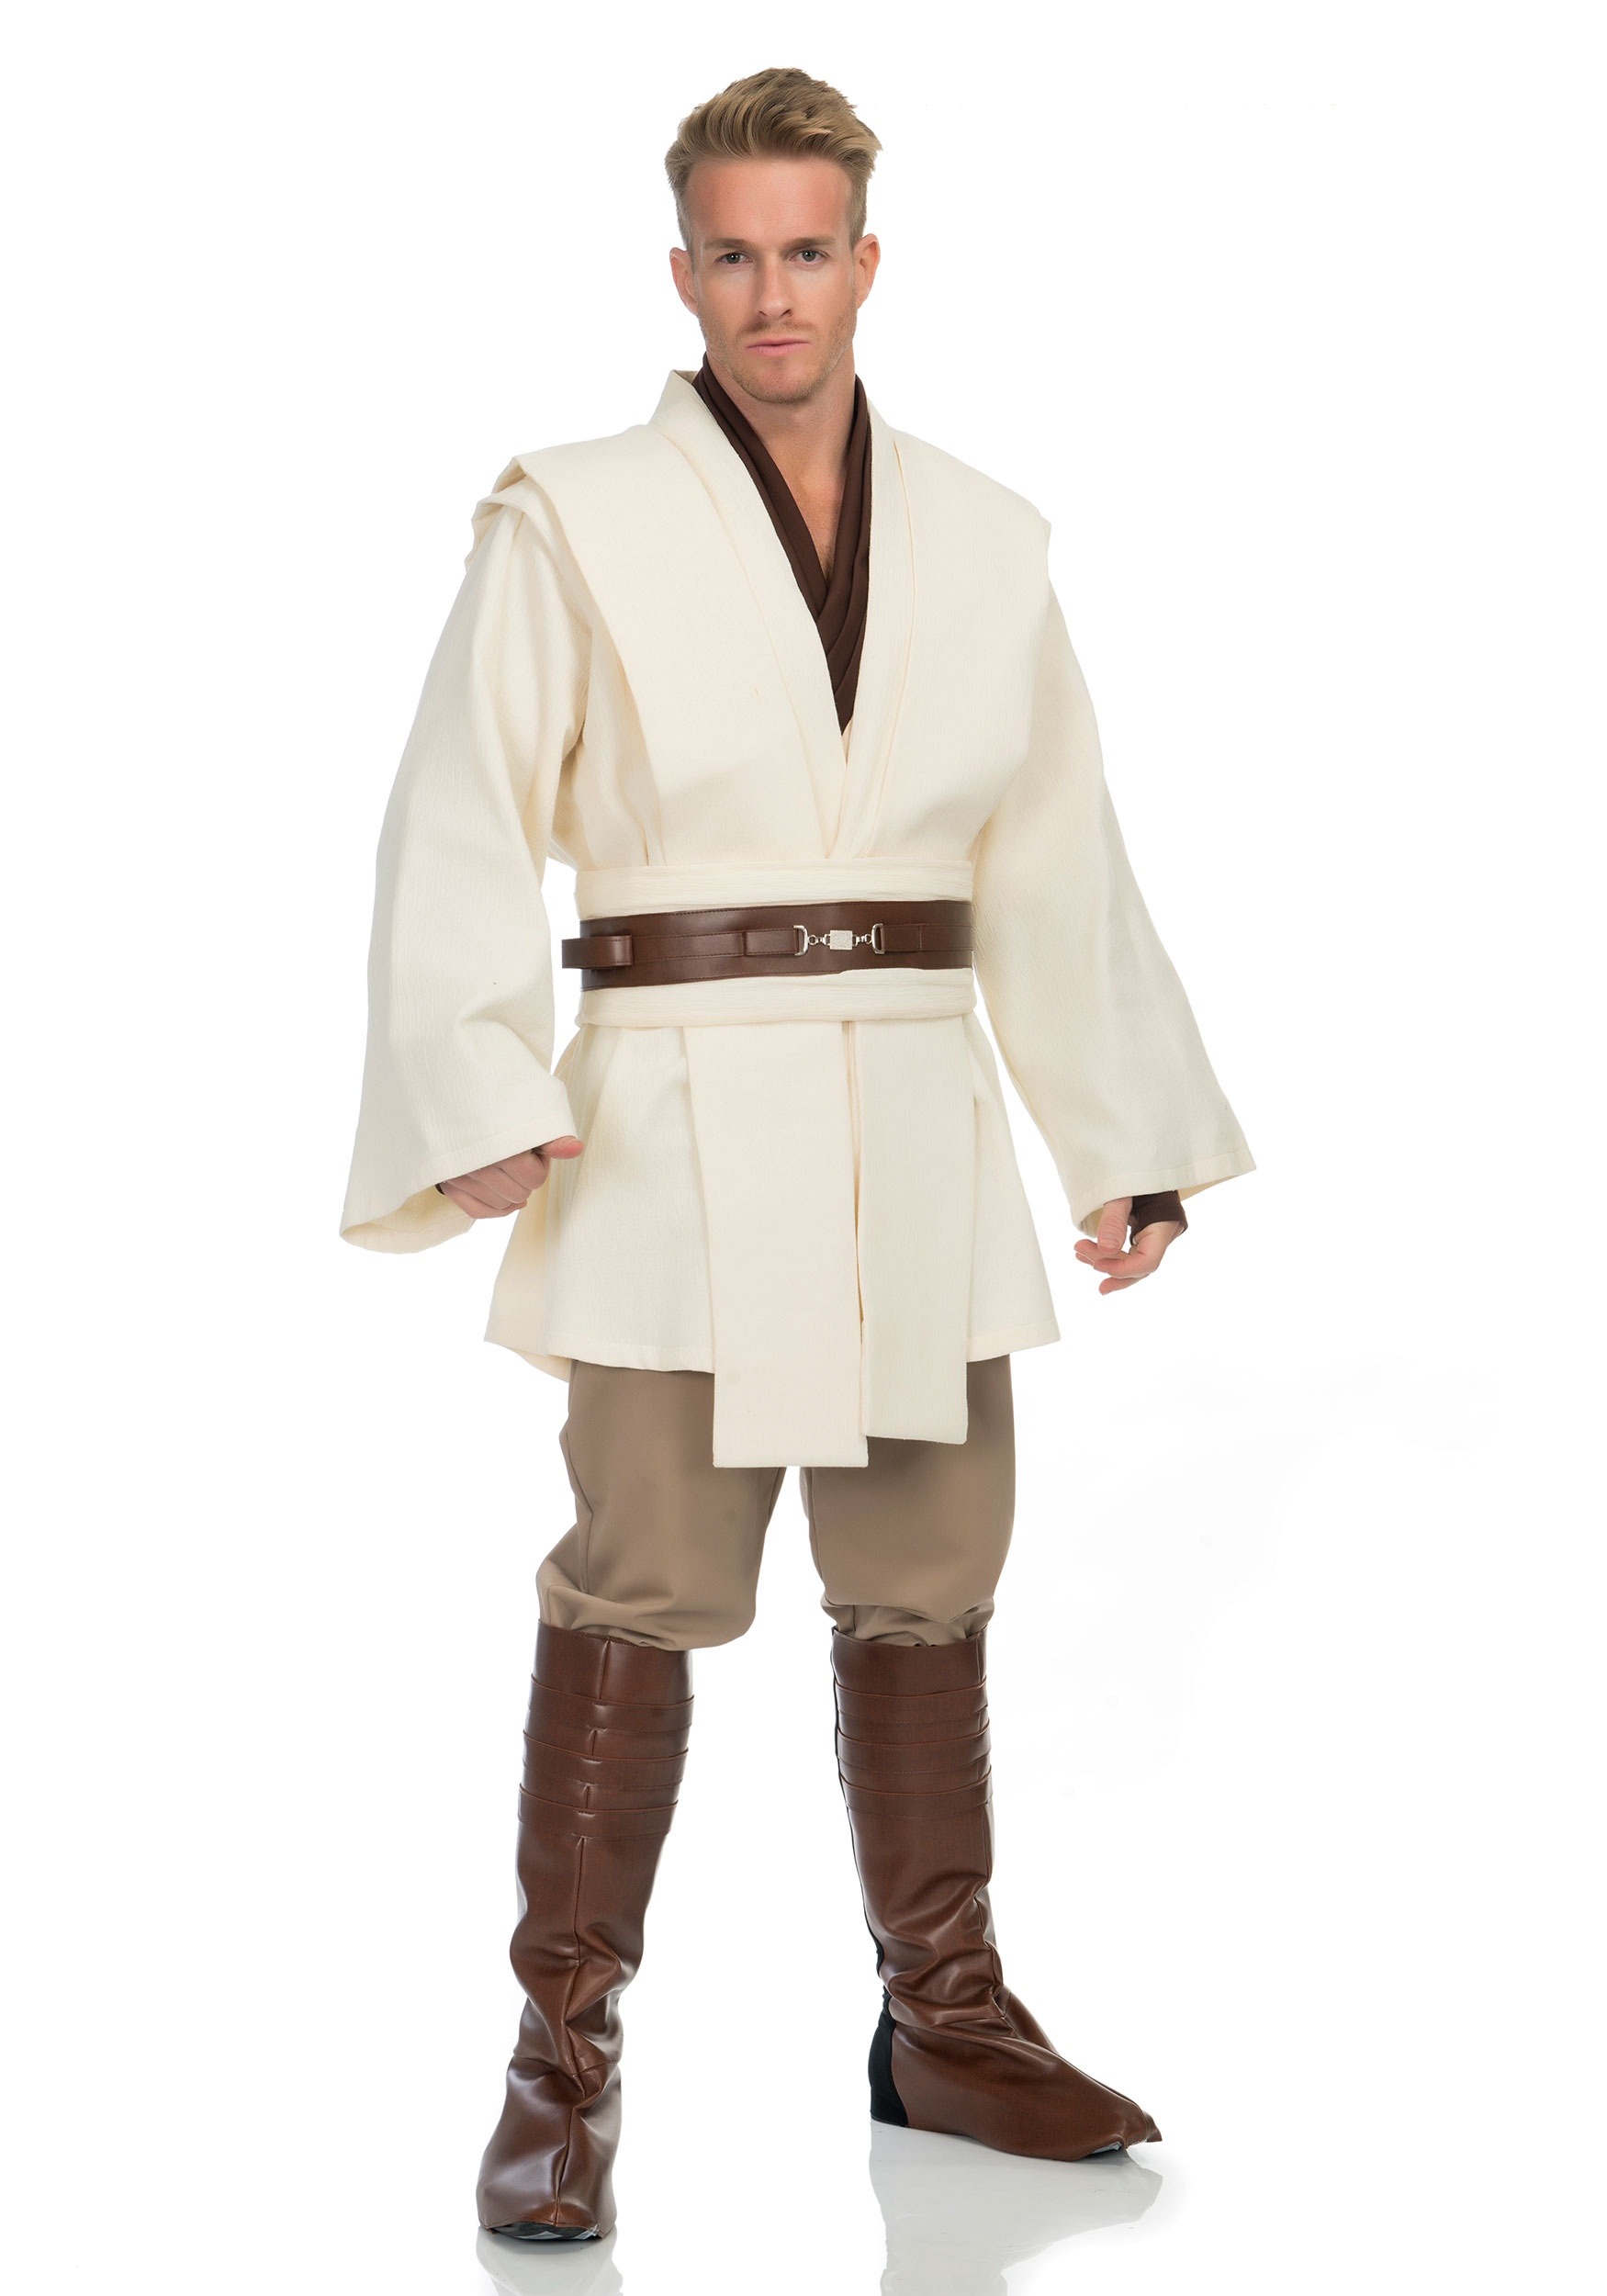 Obi Wan Kenobi Men's Costume From Star Wars